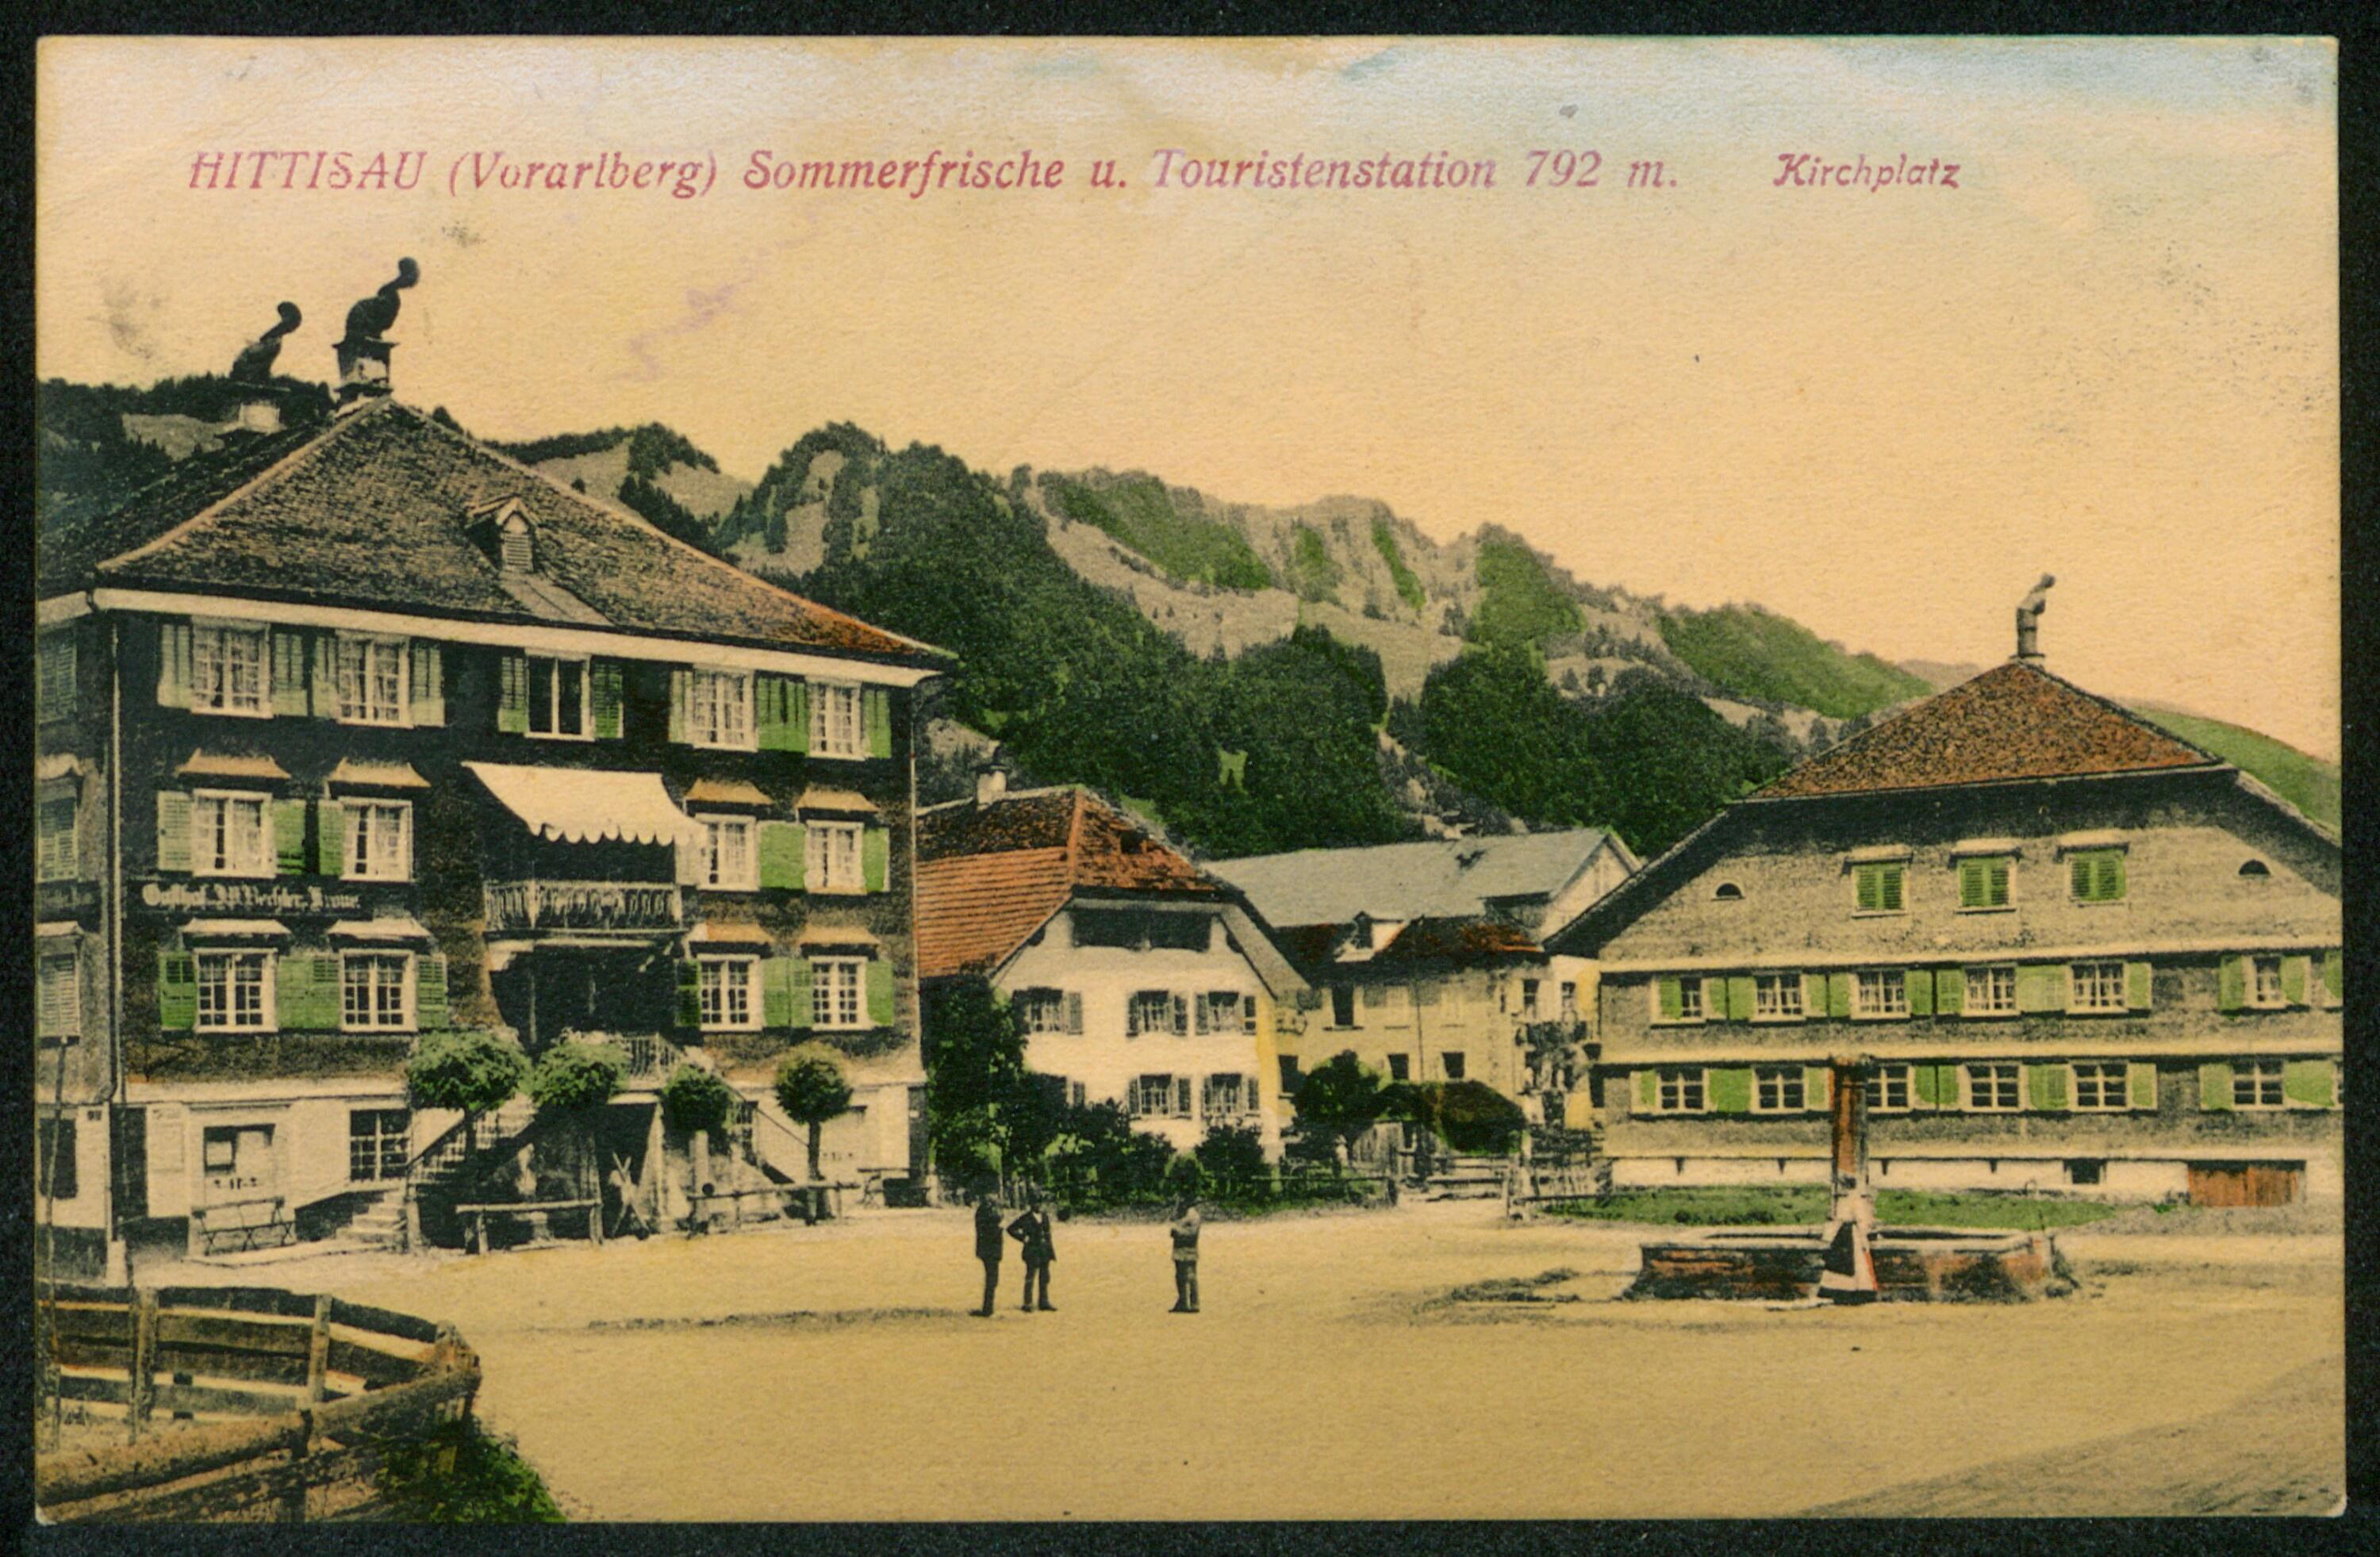 Hittisau (Vorarlberg) Sommerfrische u. Touristenstation 792 m.></div>


    <hr>
    <div class=